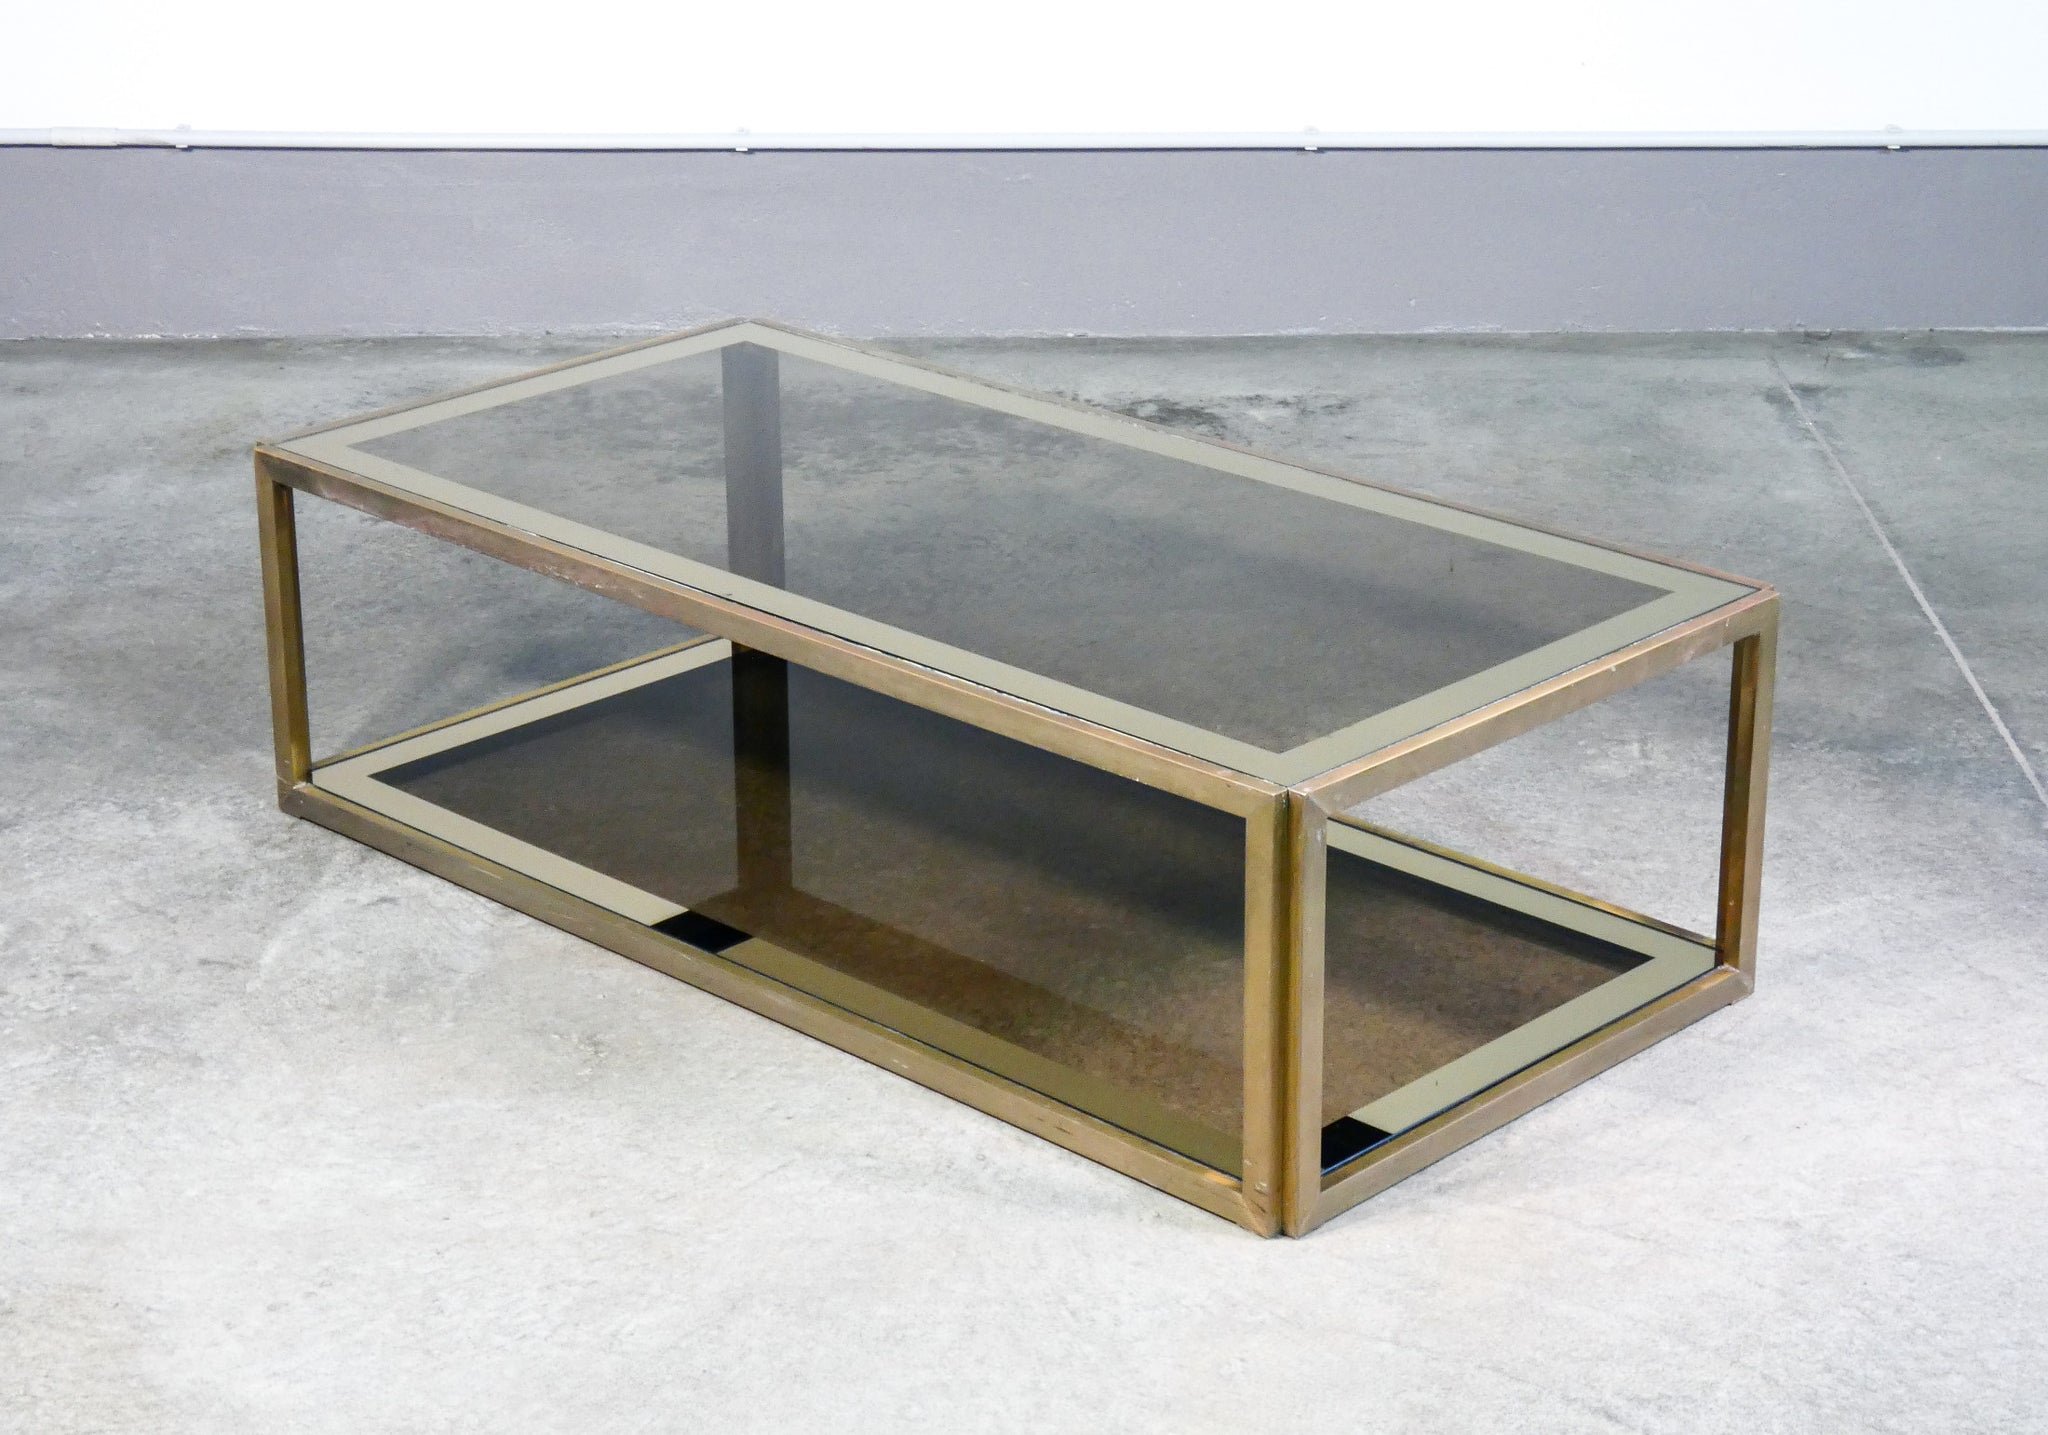 Tavolino da salotto di design in metallo dorato e vetro – Mercand Store